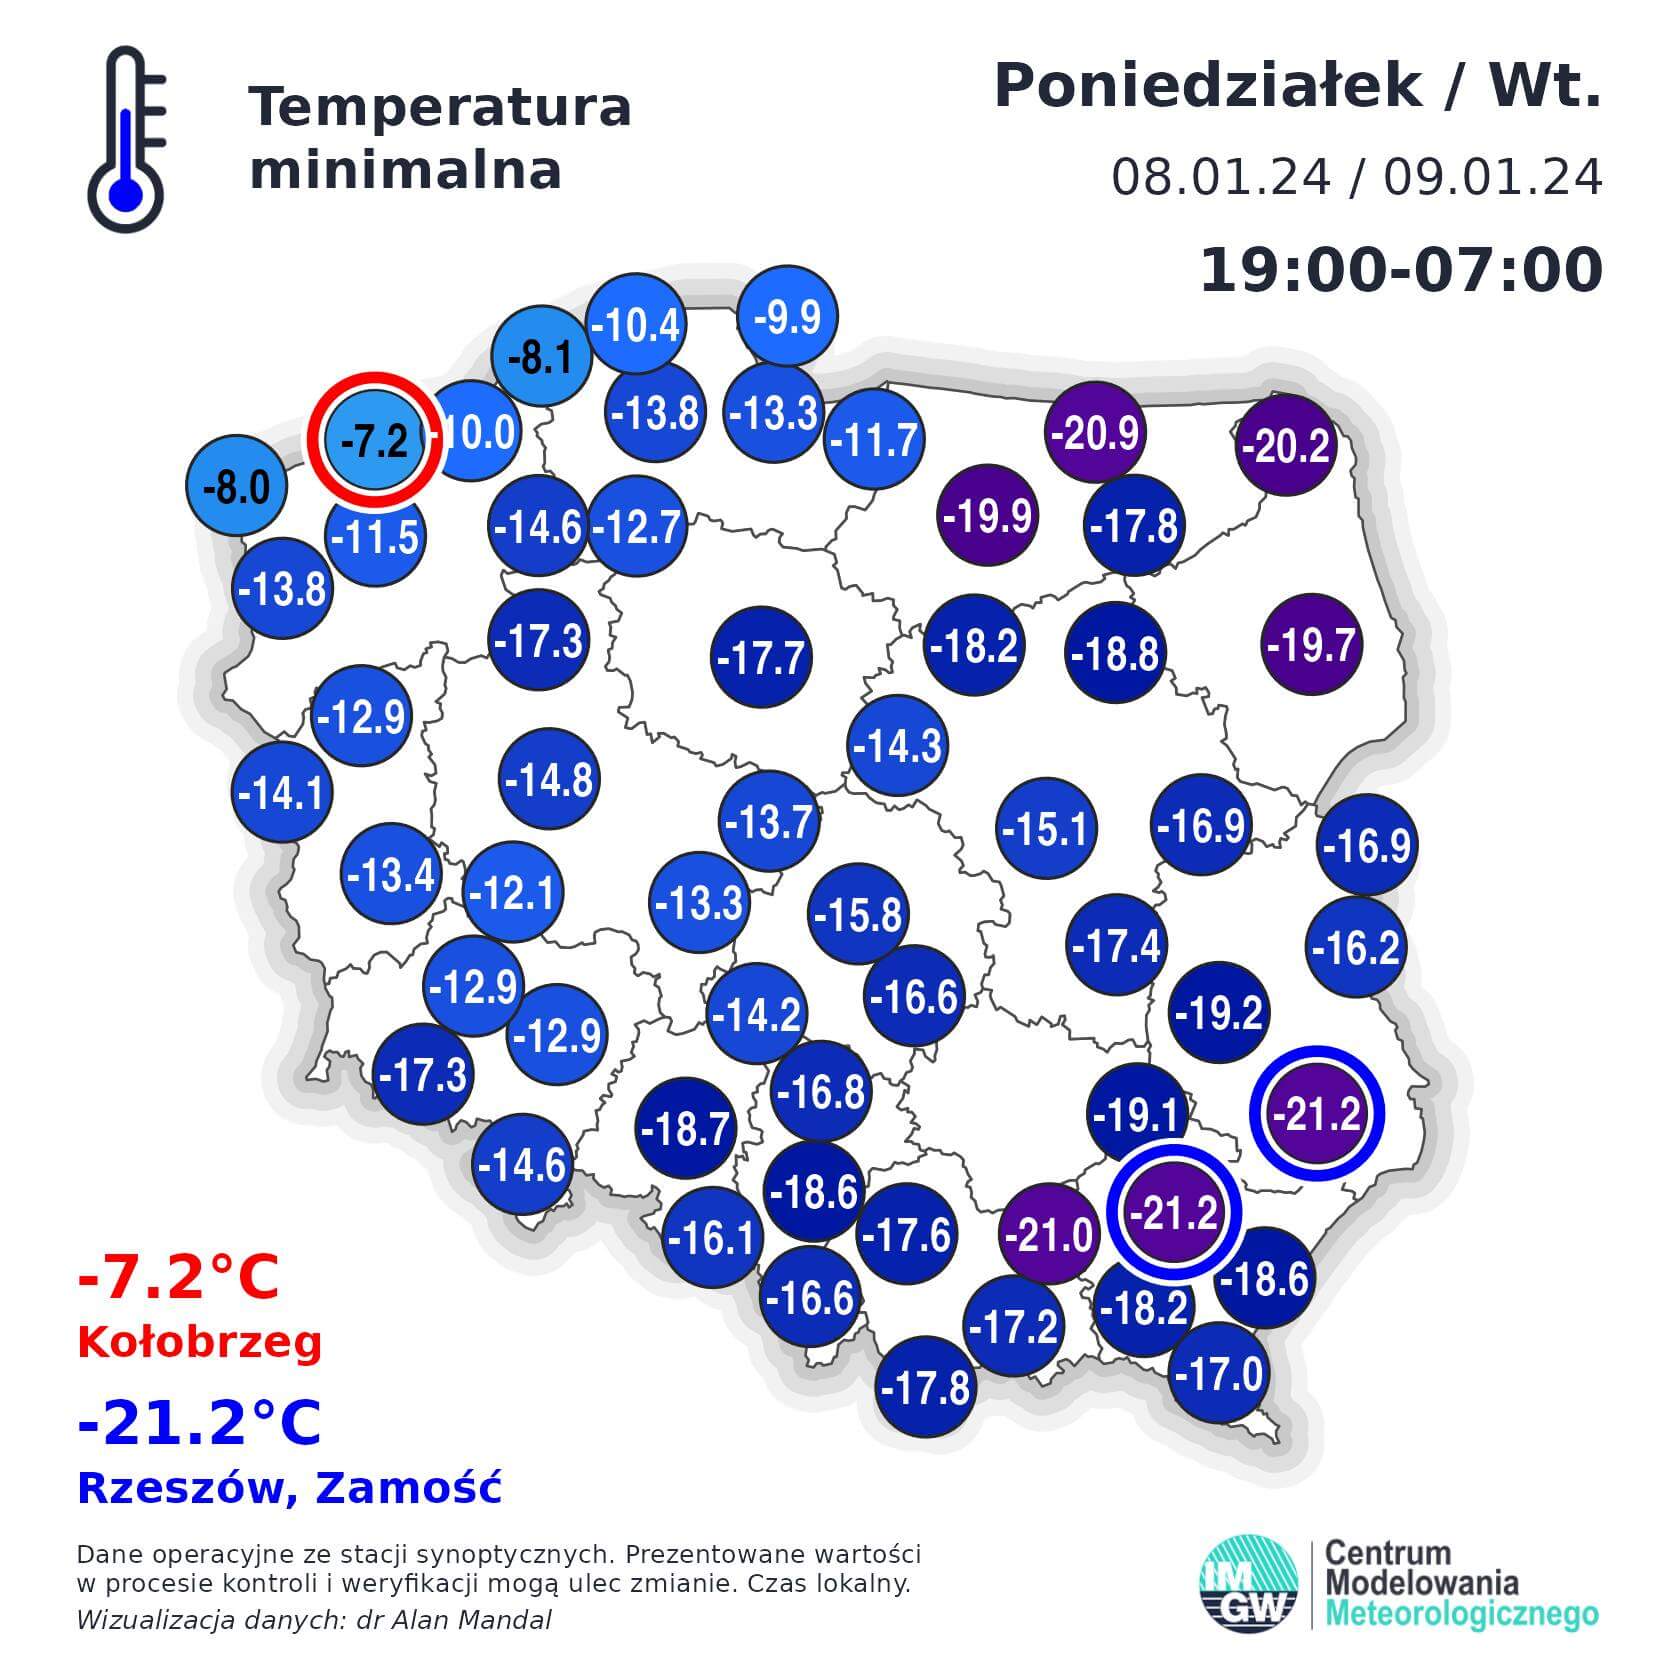 Temperatura minimalna w nocy z poniedziałku na wtorek 8-9 stycznia 2024 r. w Polsce